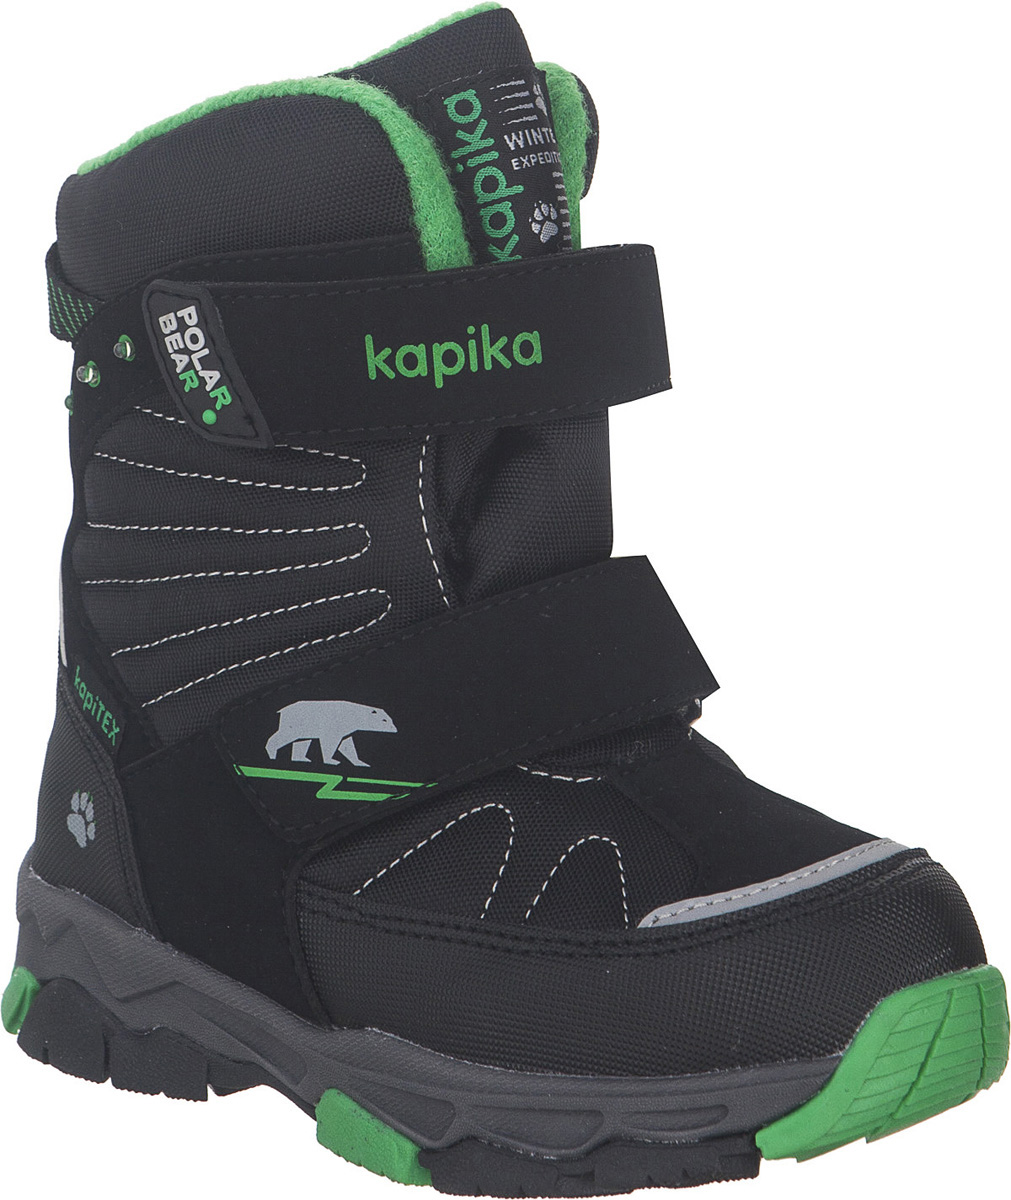 Ботинки для мальчика Kapika KapiTEX, цвет: черный, зеленый. 42235-1. Размер 32